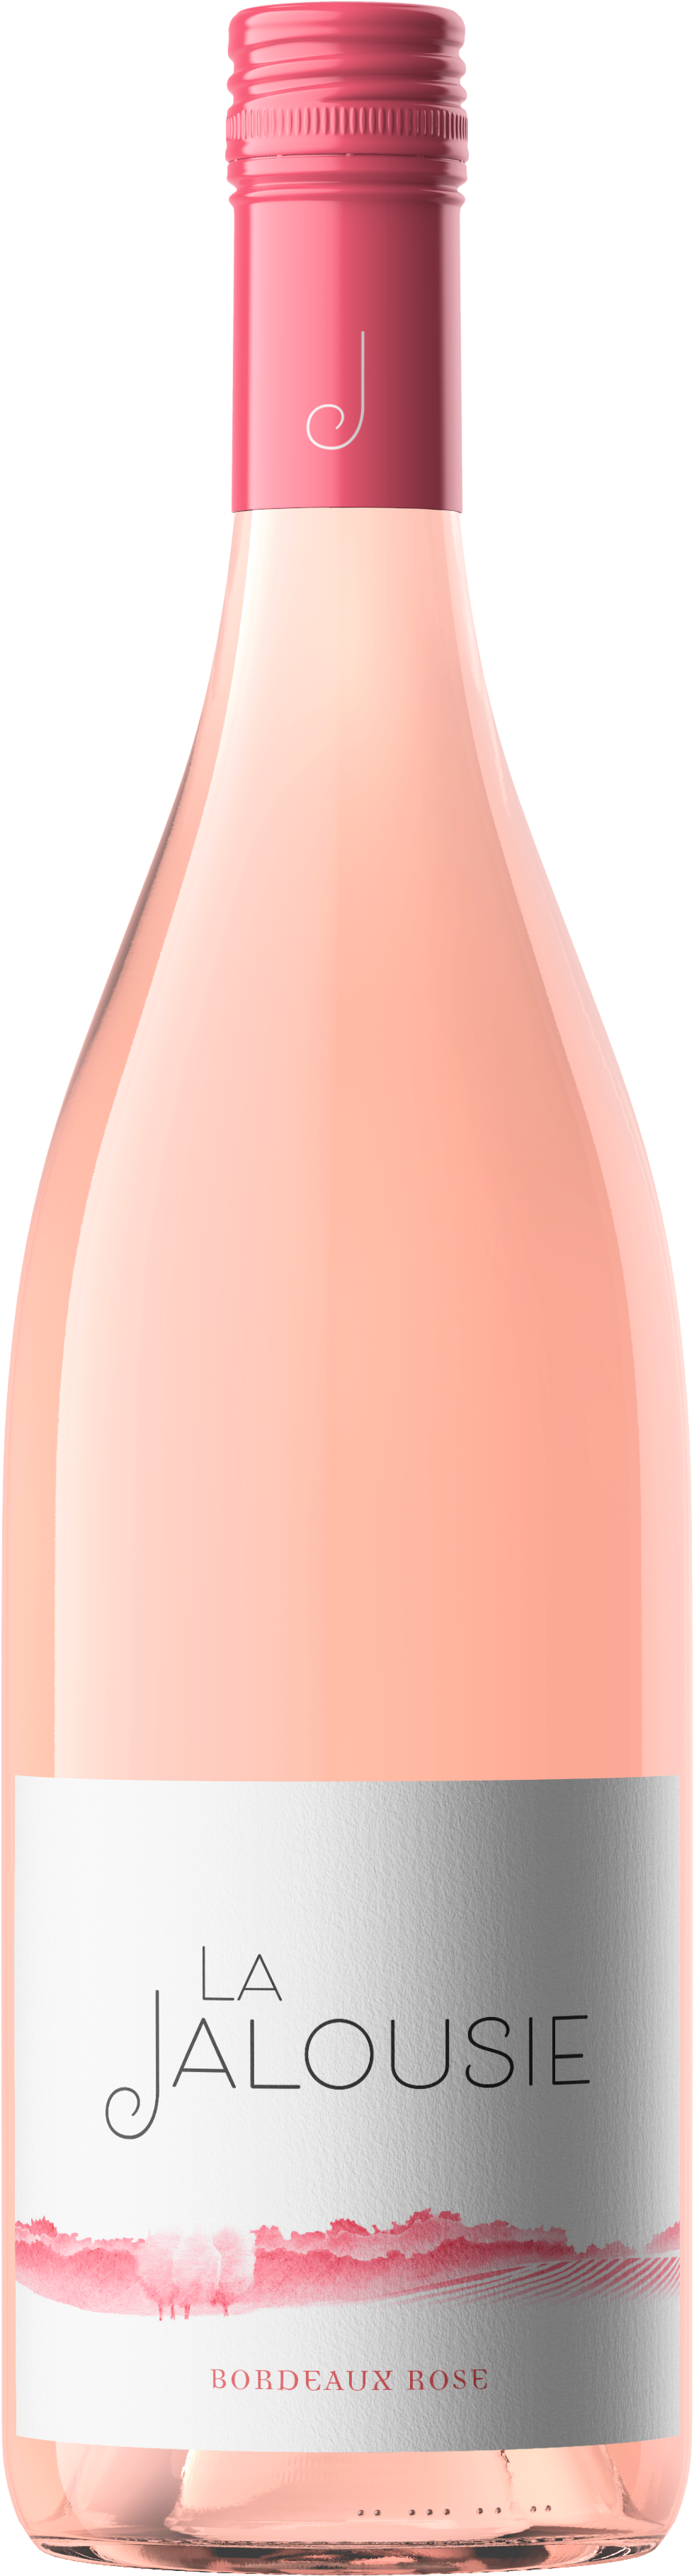 bouteille la jalousie rose